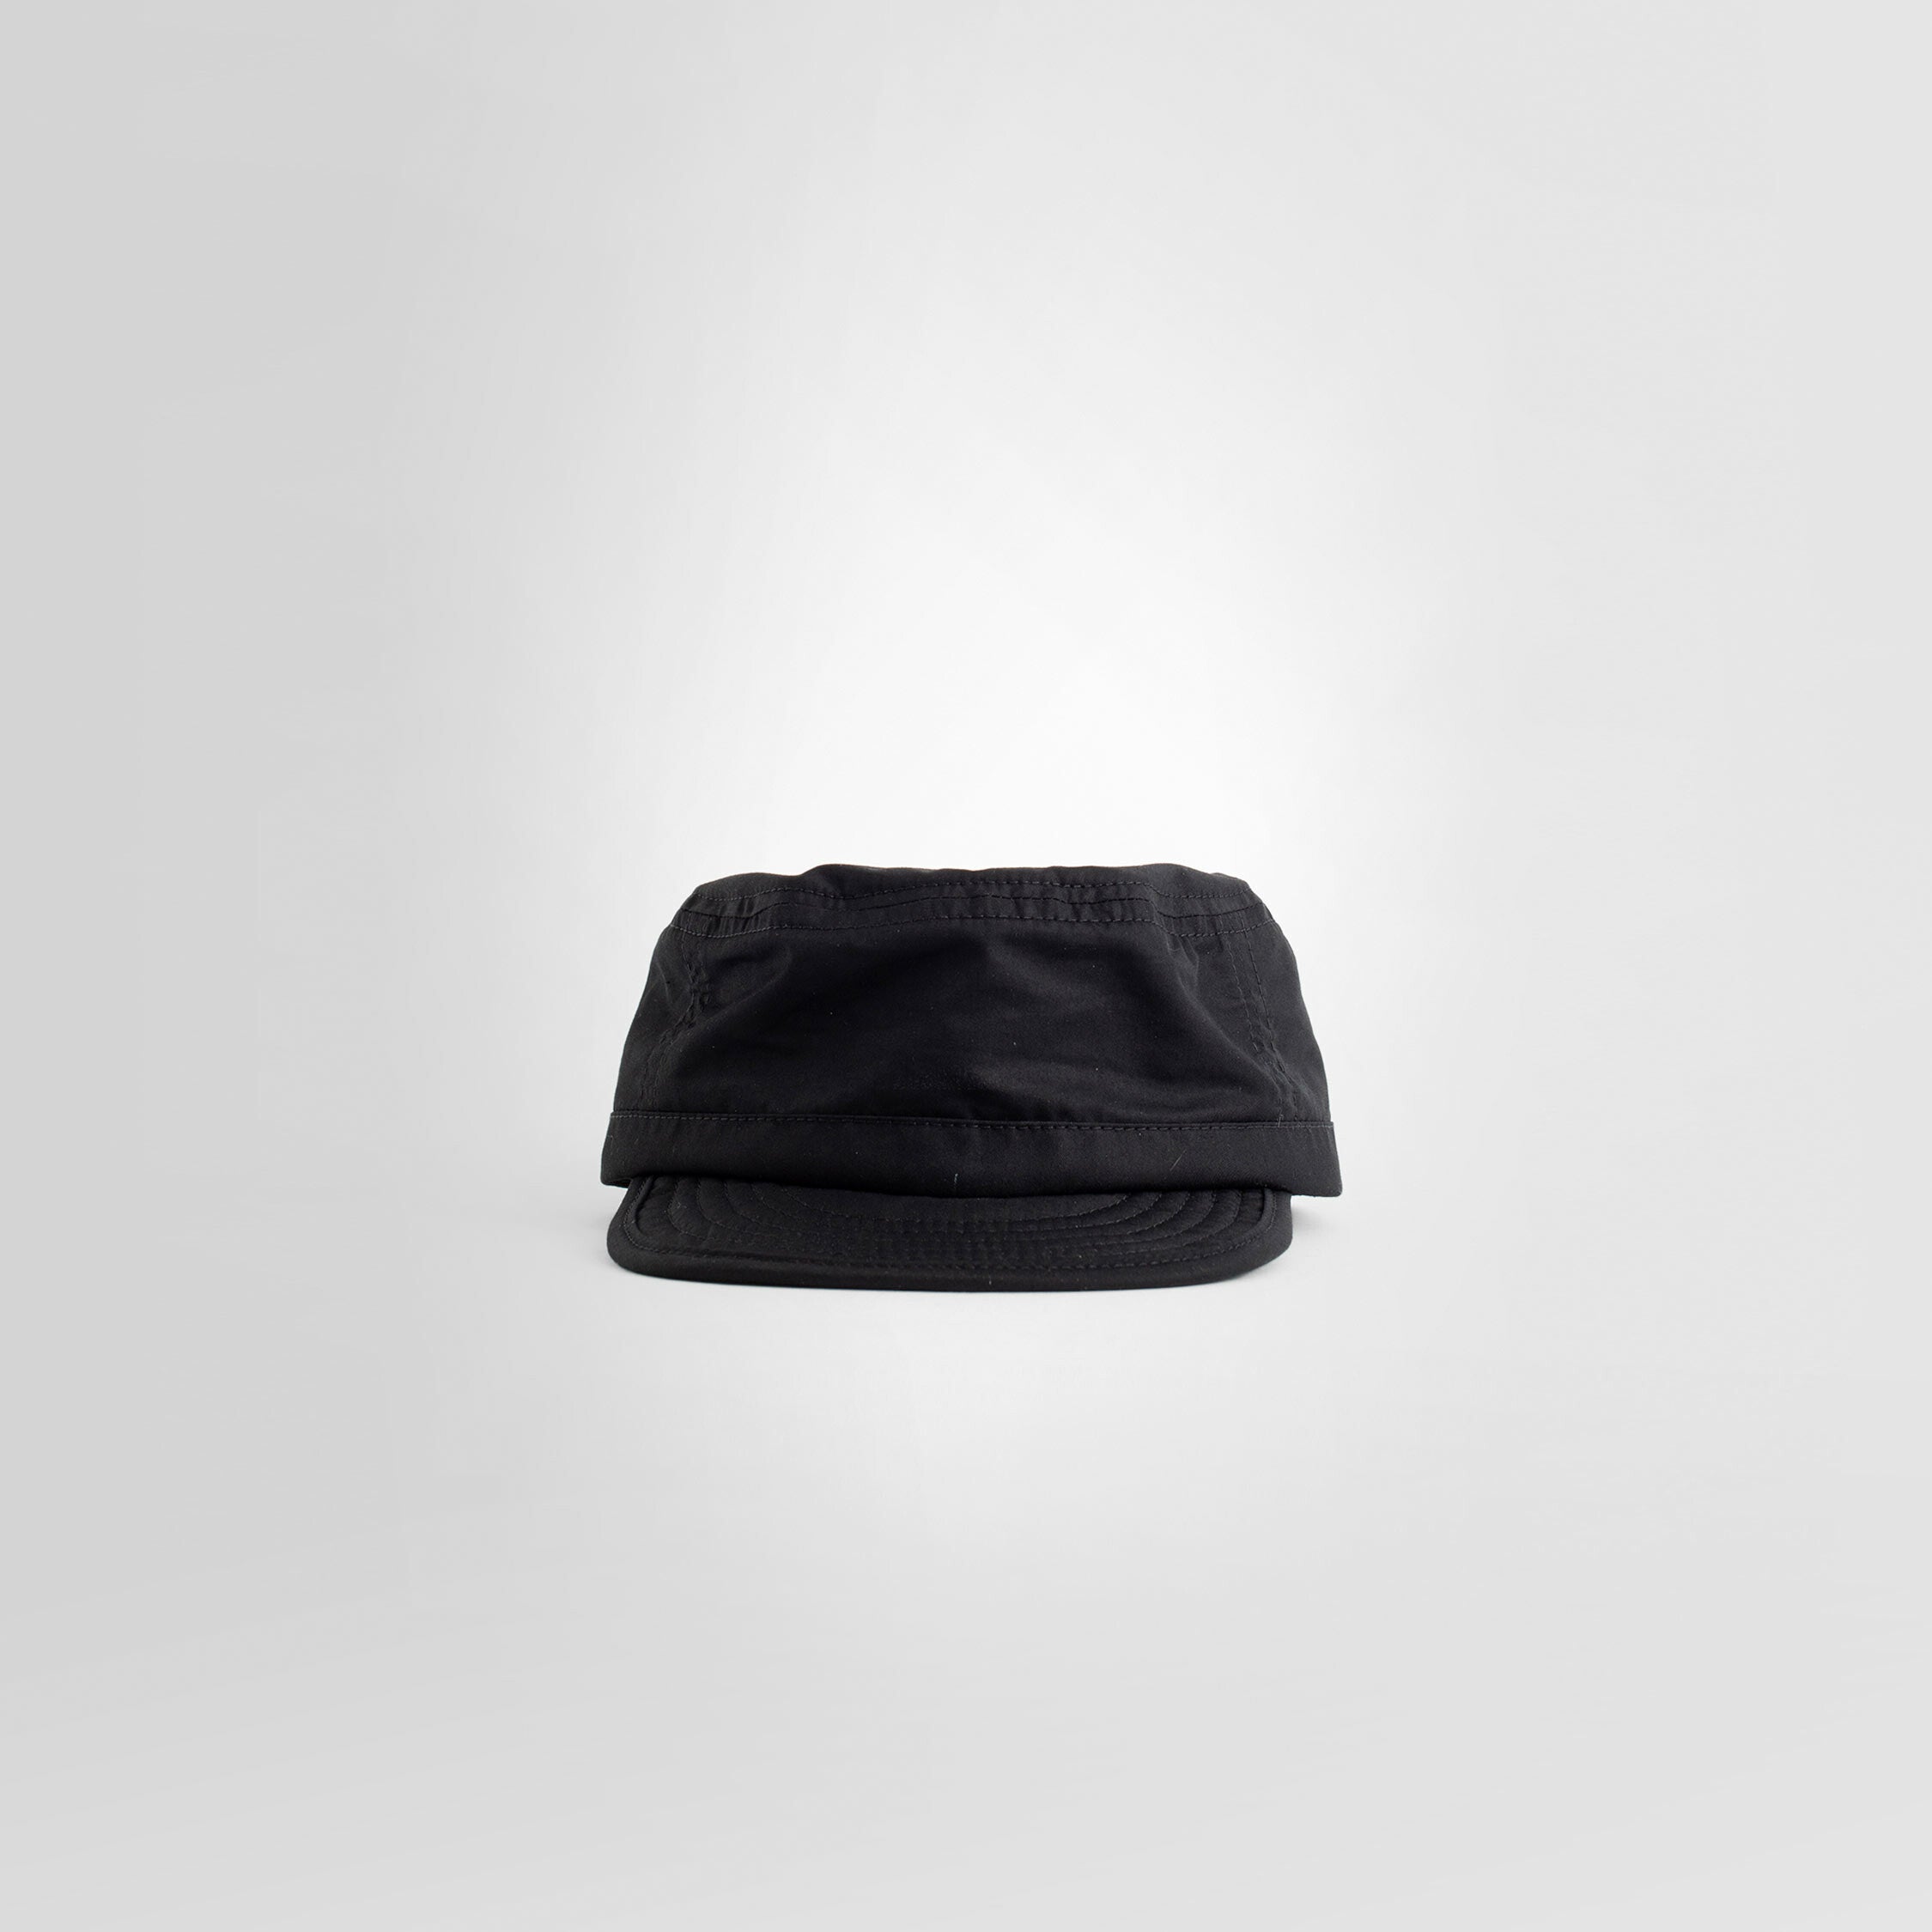 LEMAIRE WOMAN BLACK HATS - LEMAIRE - HATS